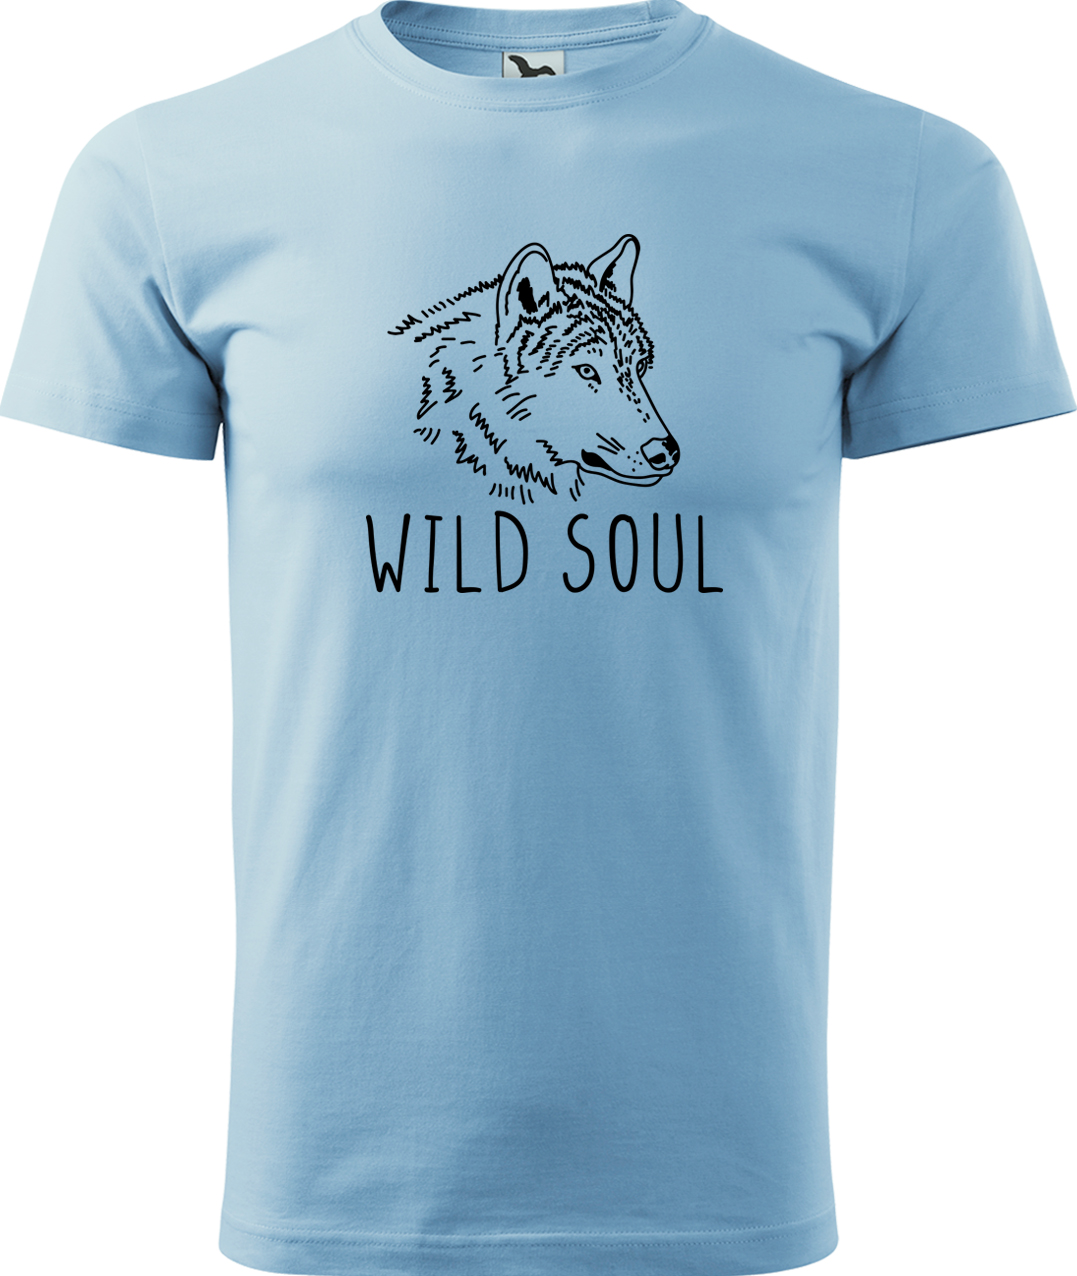 Pánské tričko s vlkem - Wild soul Velikost: L, Barva: Nebesky modrá (15), Střih: pánský